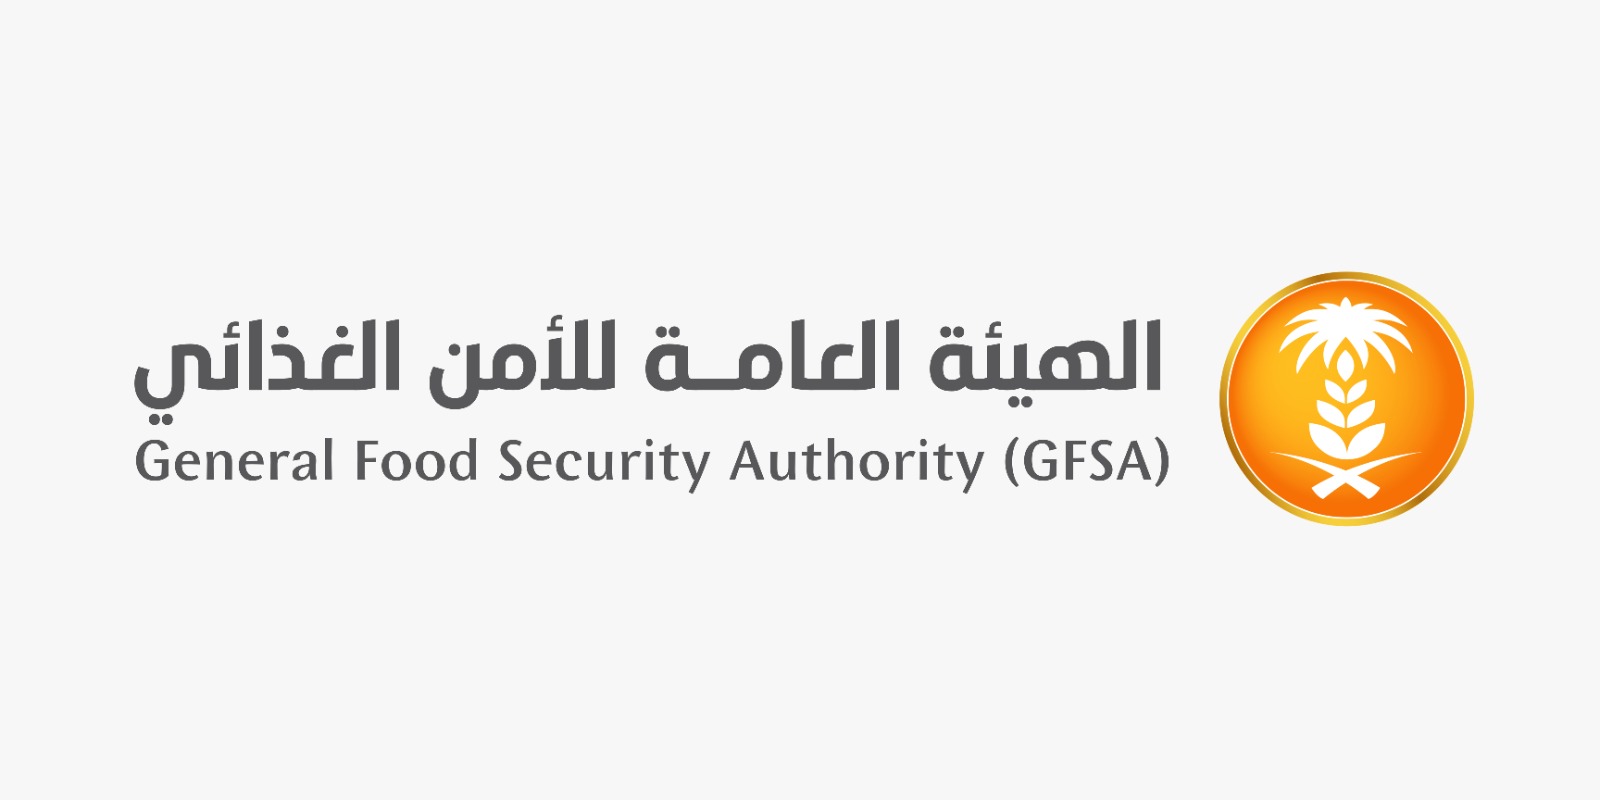 رقم التواصل مع الهيئة العامة للأمن الغذائي في السعودية